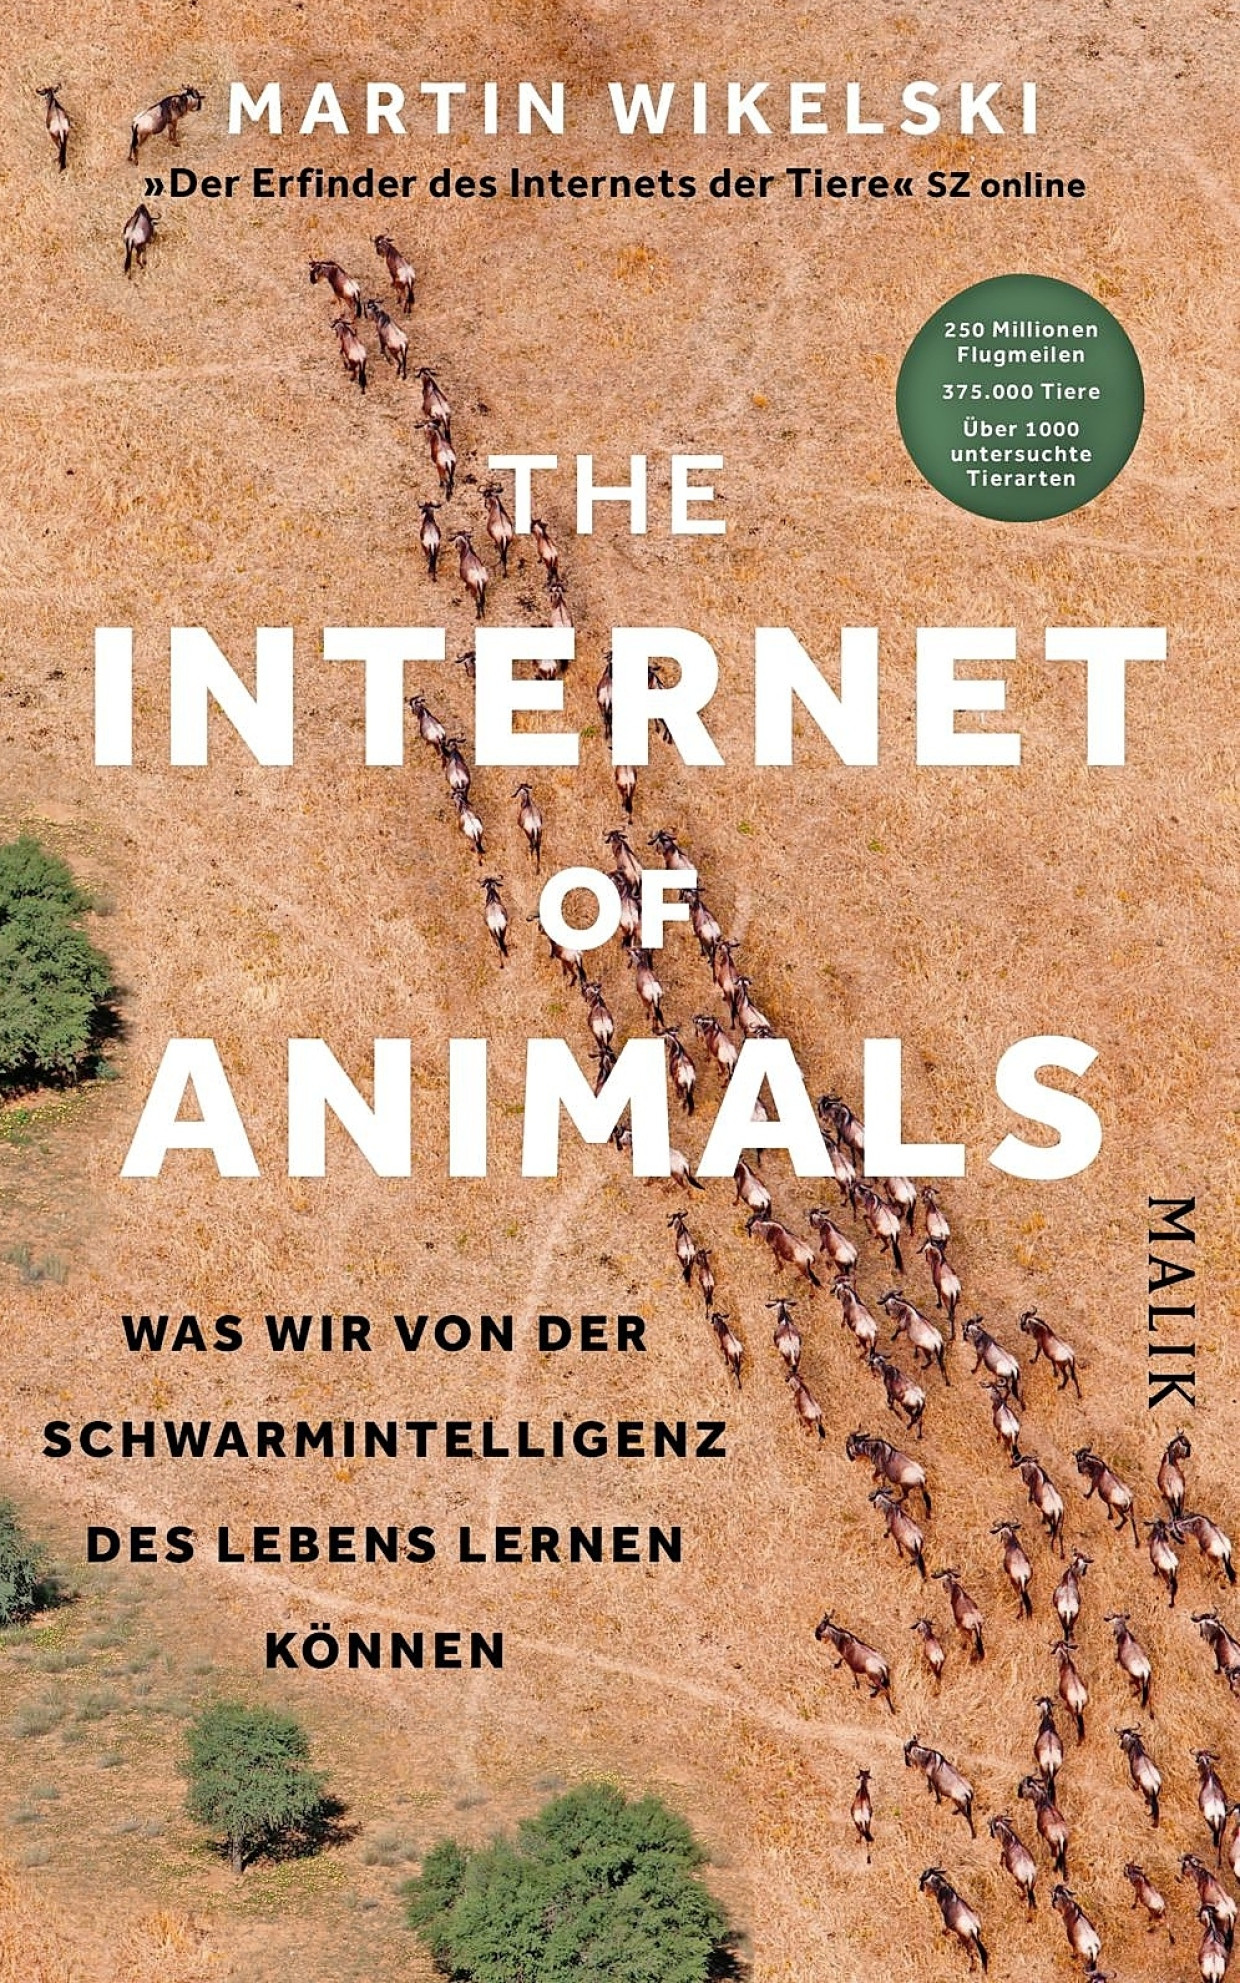 Martin Wikelski: „The Internet of Animals“. Was wir von derSchwarmintelligenz des Lebens lernen können.